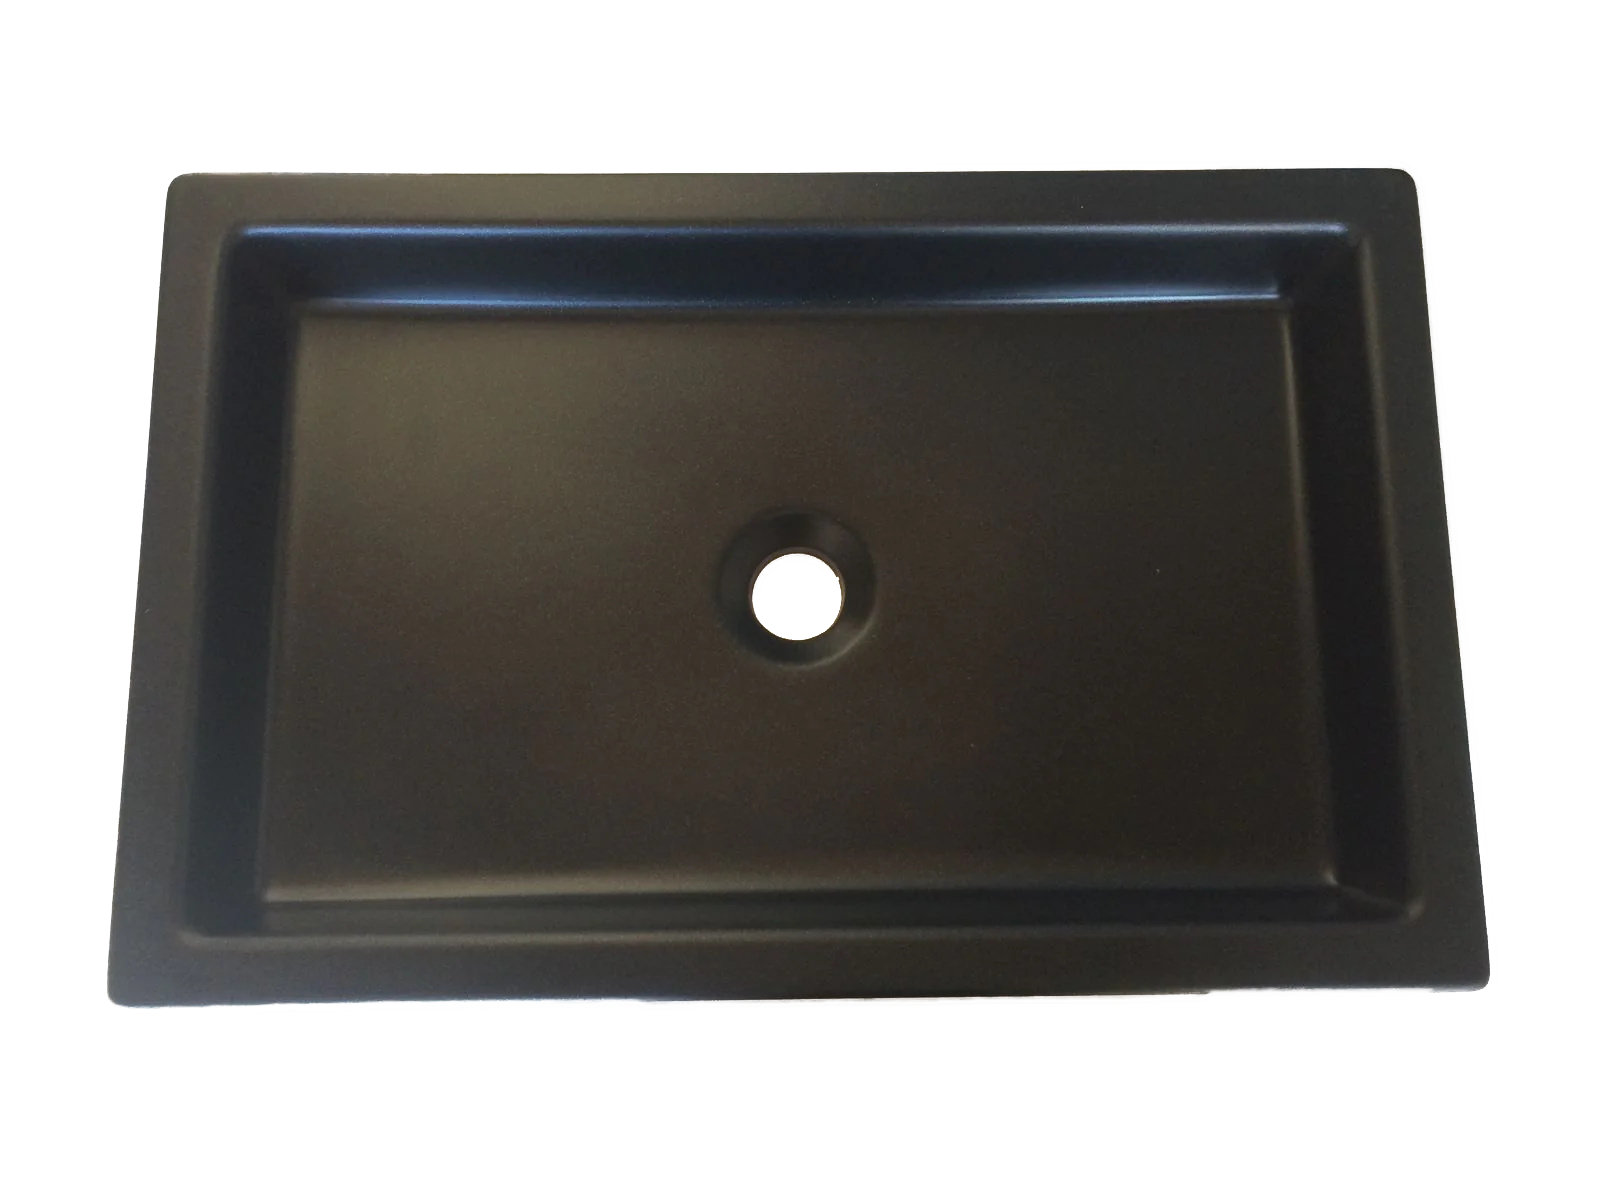 Black Granite stone Undermount HAND WASH BASIN Vanity sink Drop-in installation